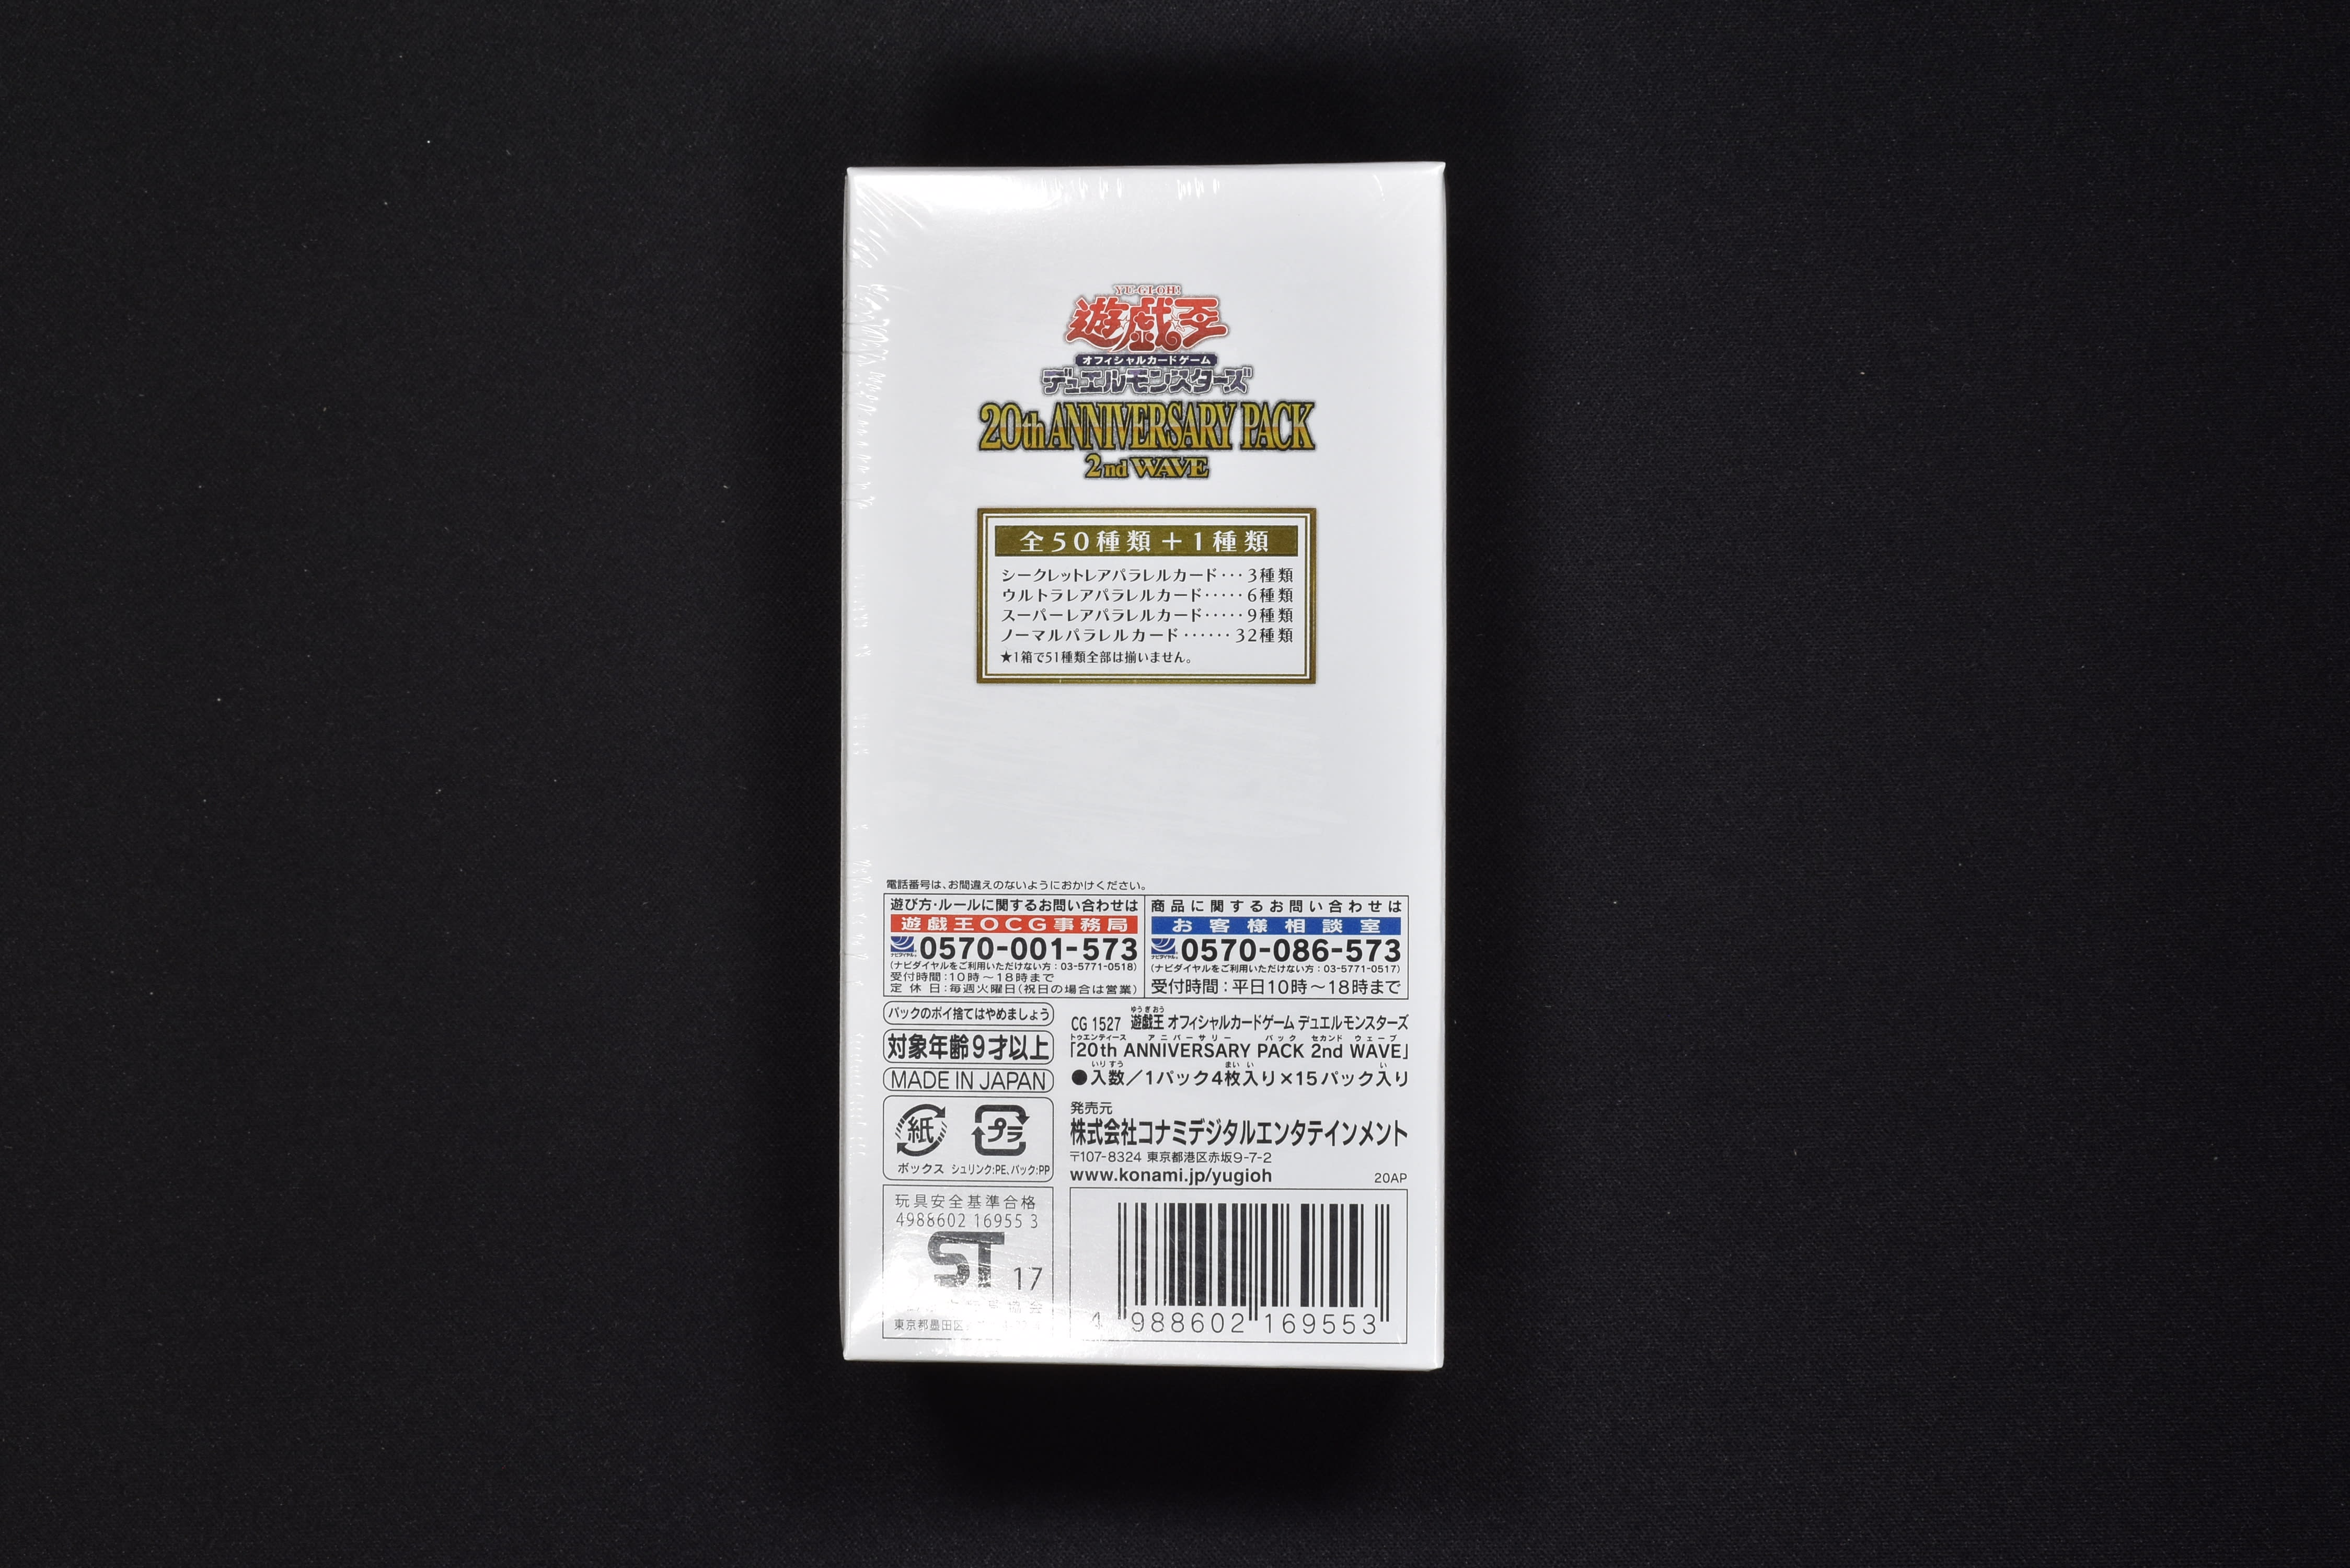 20th ANNIVERSARY PACK 2nd WAVE ボックス 販売中！ | 遊戯王カード ...